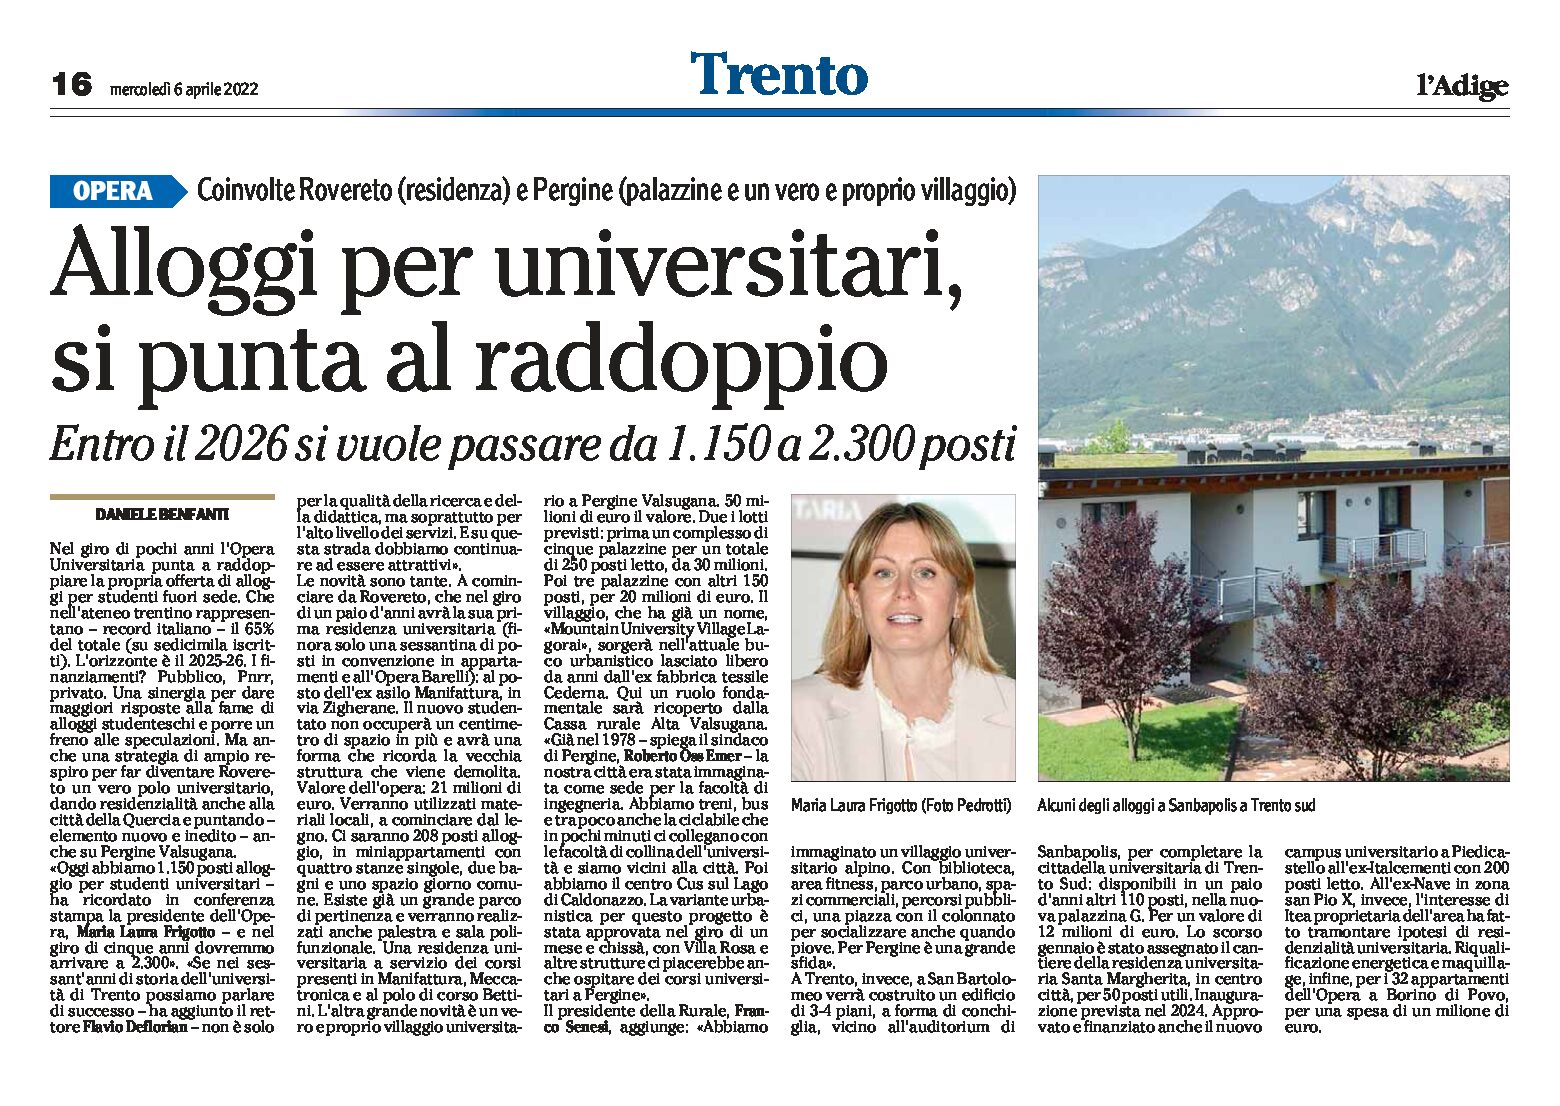 Trento: alloggi per universitari, si punta al raddoppio